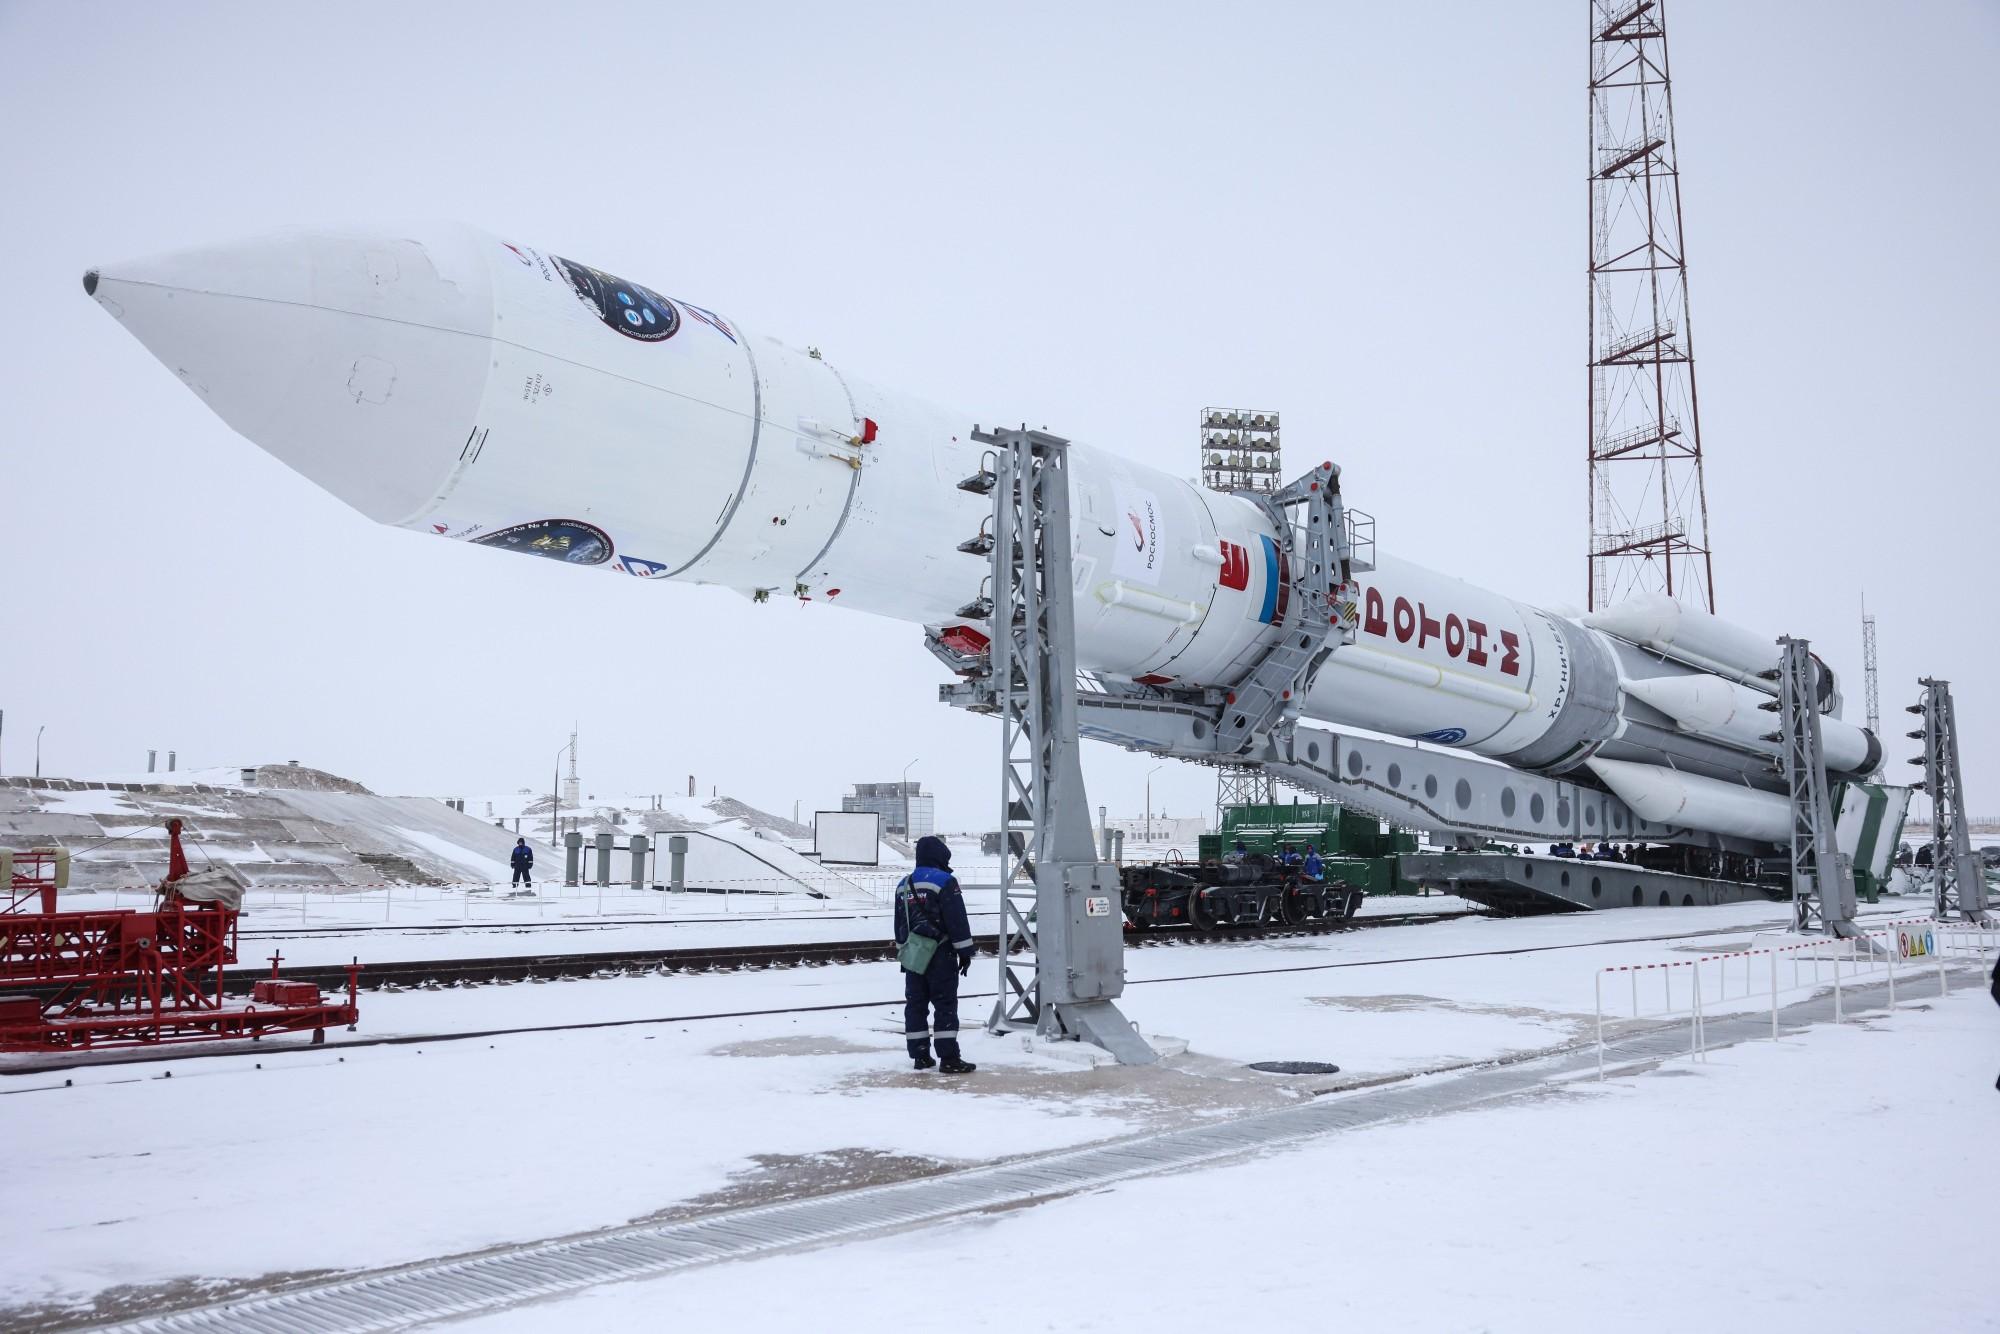 2月 5 日俄罗斯「质子」号运载火箭发射升空,该火箭都有哪些值得关注